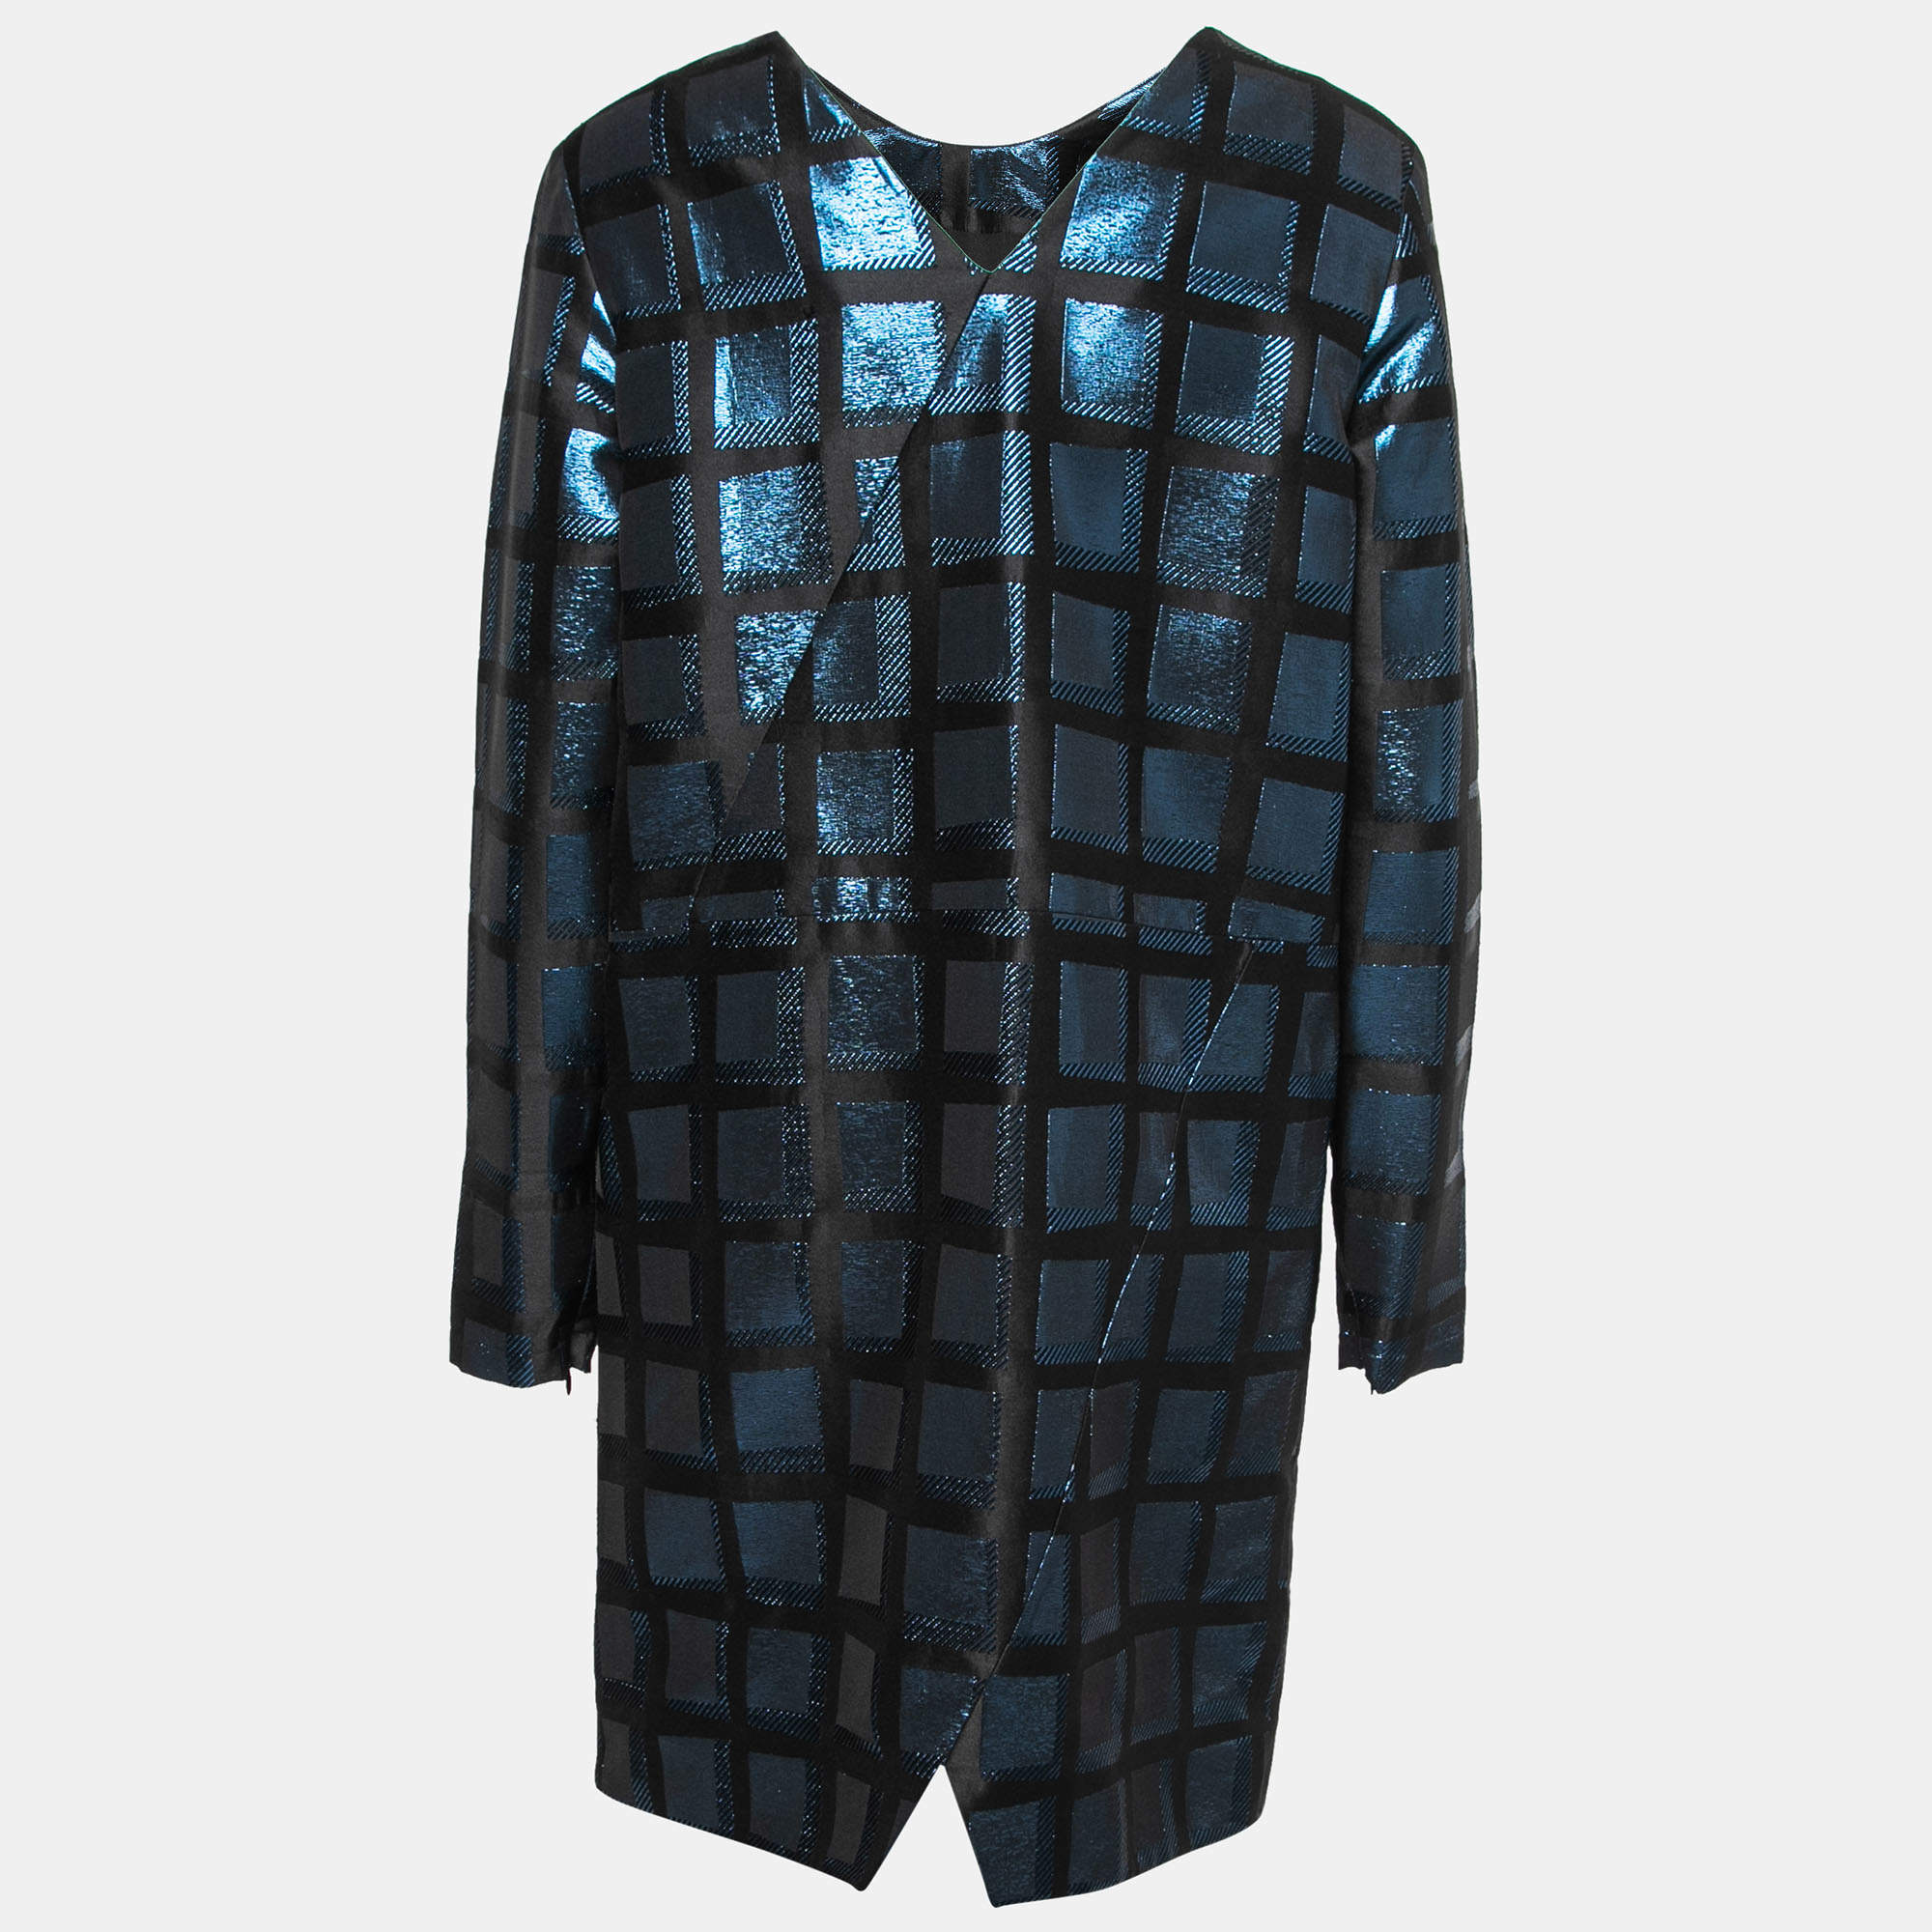 Kenzo Black & Blue Metallic Square Jacquard Shift Dress L